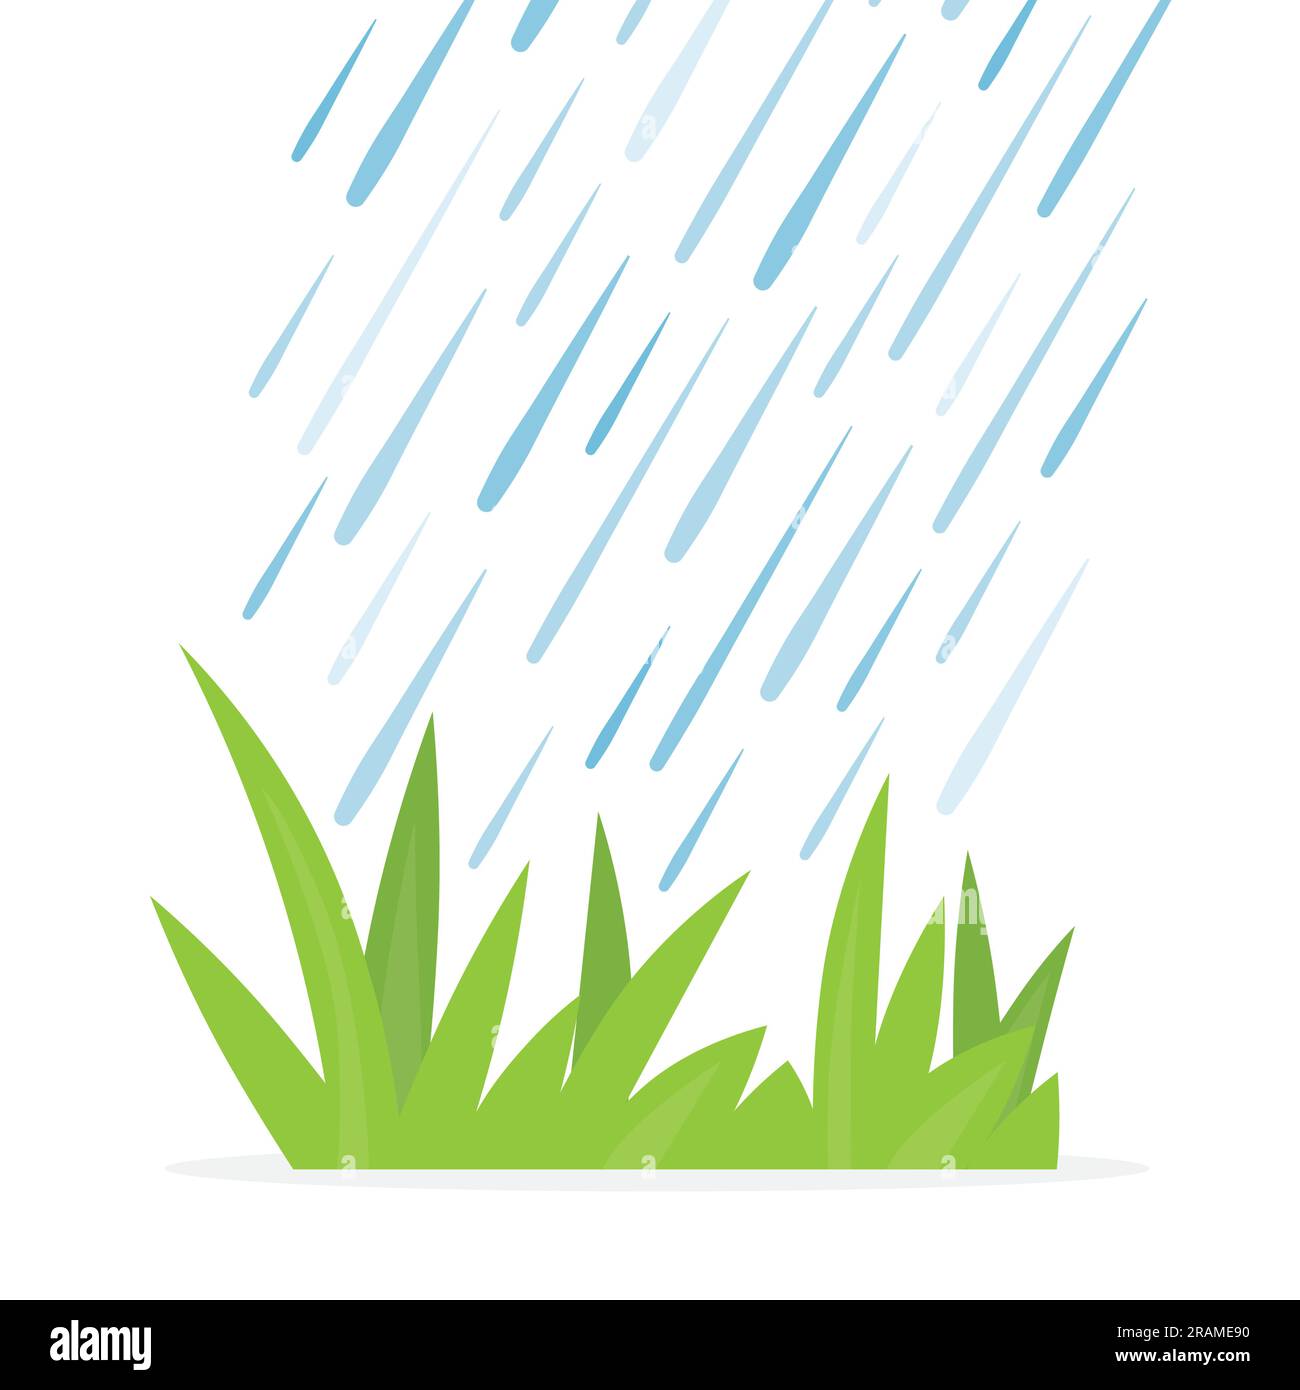 chute d'eau sur les lames vertes de l'herbe - illustration vectorielle - illustration vectorielle Illustration de Vecteur